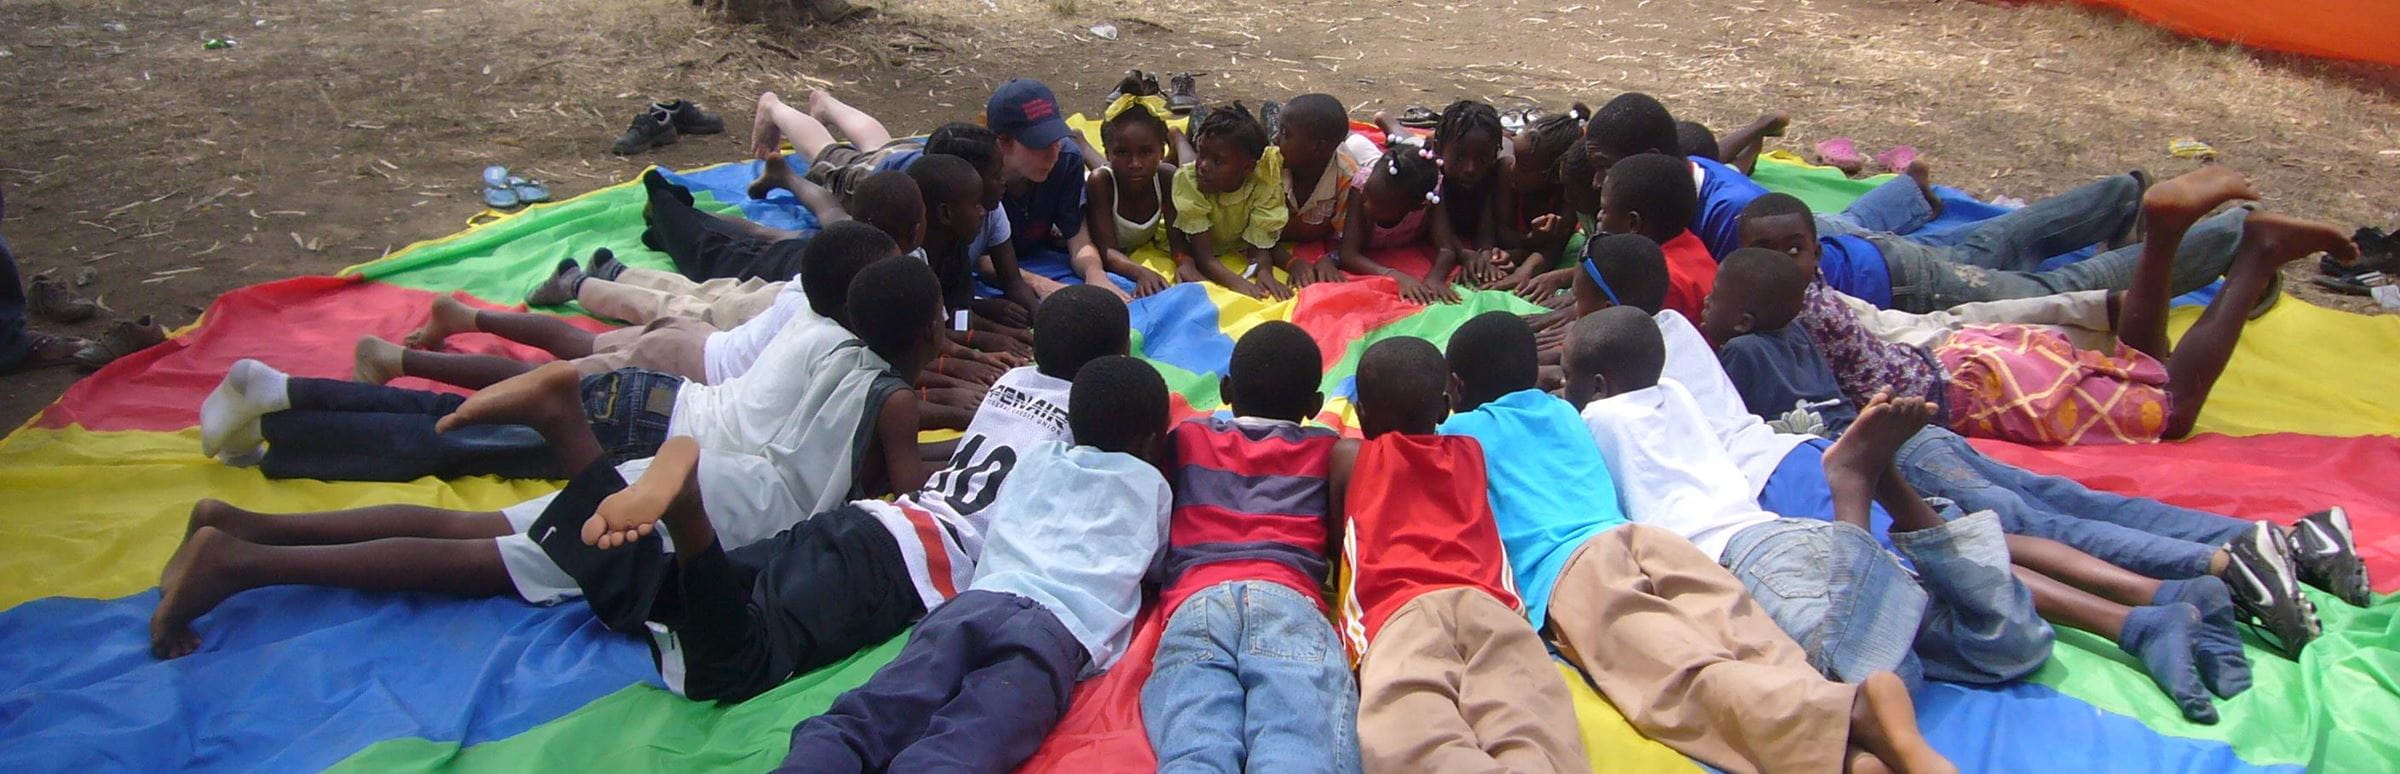 Kinder in Haiti liegen im Kreis bäuchlings auf einer bunten Decke. (Quelle: Kristina Manz)